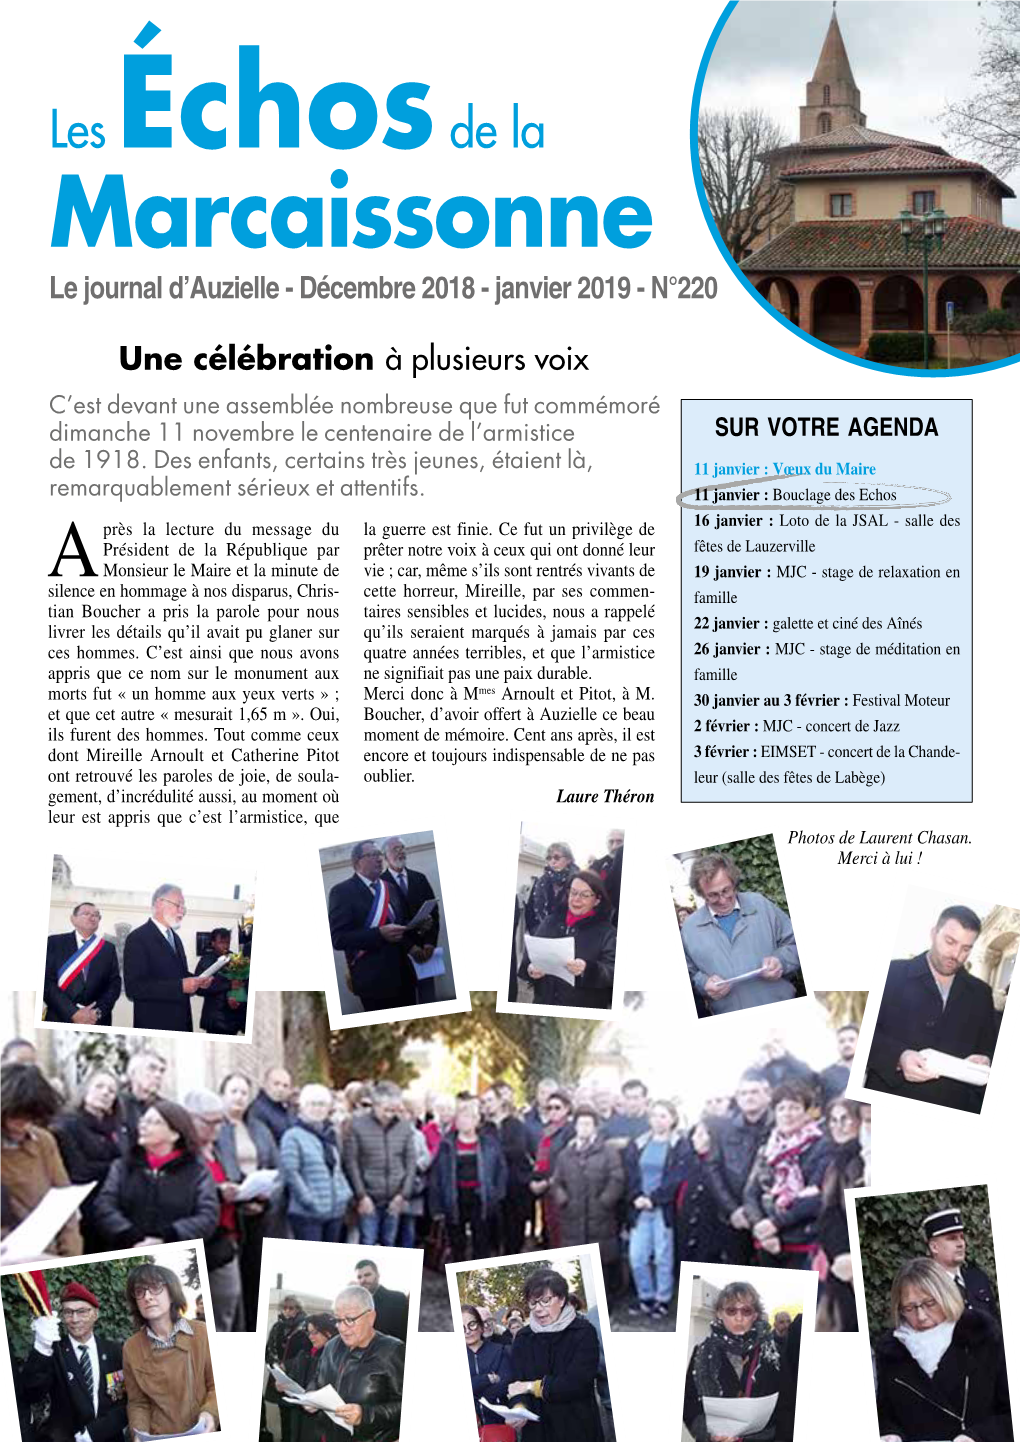 Marcaissonne Le Journal D’Auzielle - Décembre 2018 - Janvier 2019 - N°220